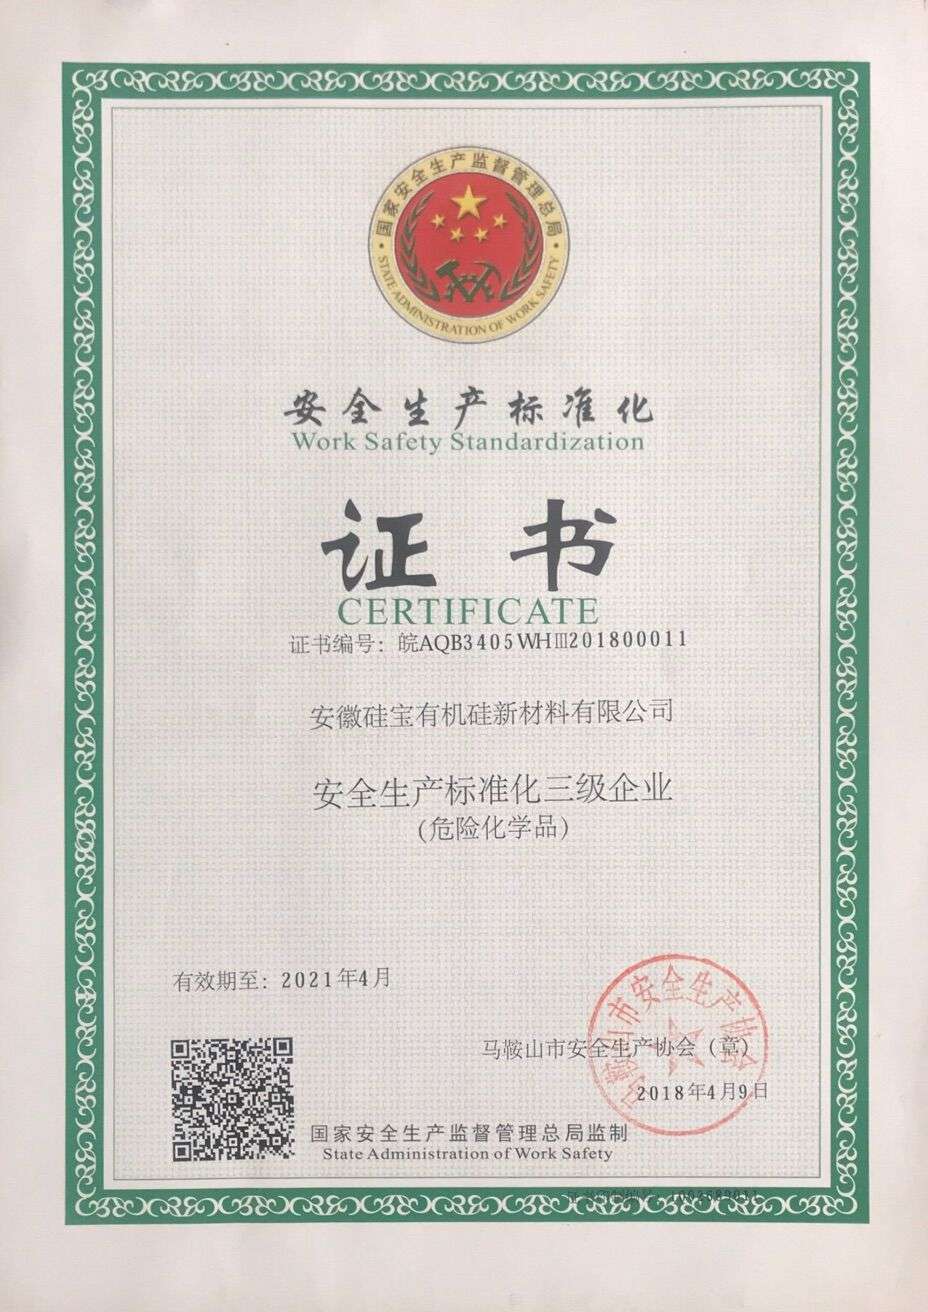 Safety Production Standardi-zation Certificate